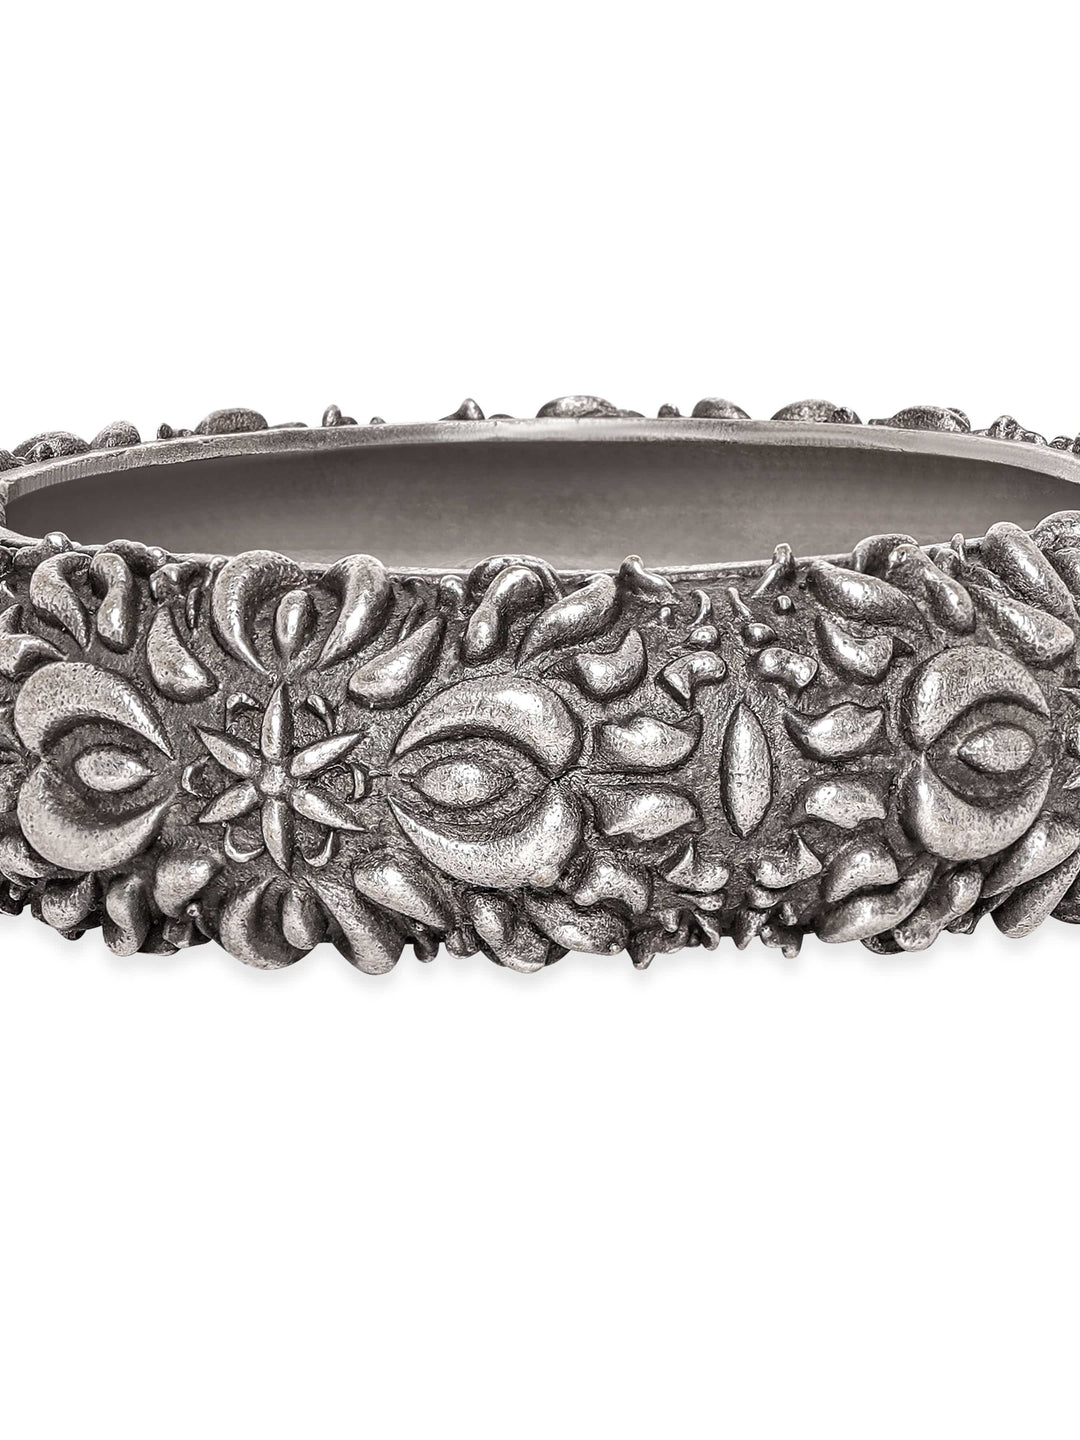 Rubans Vintage Reverie Oxidized Silver Plated Kada Bracelet Bangles & Bracelets